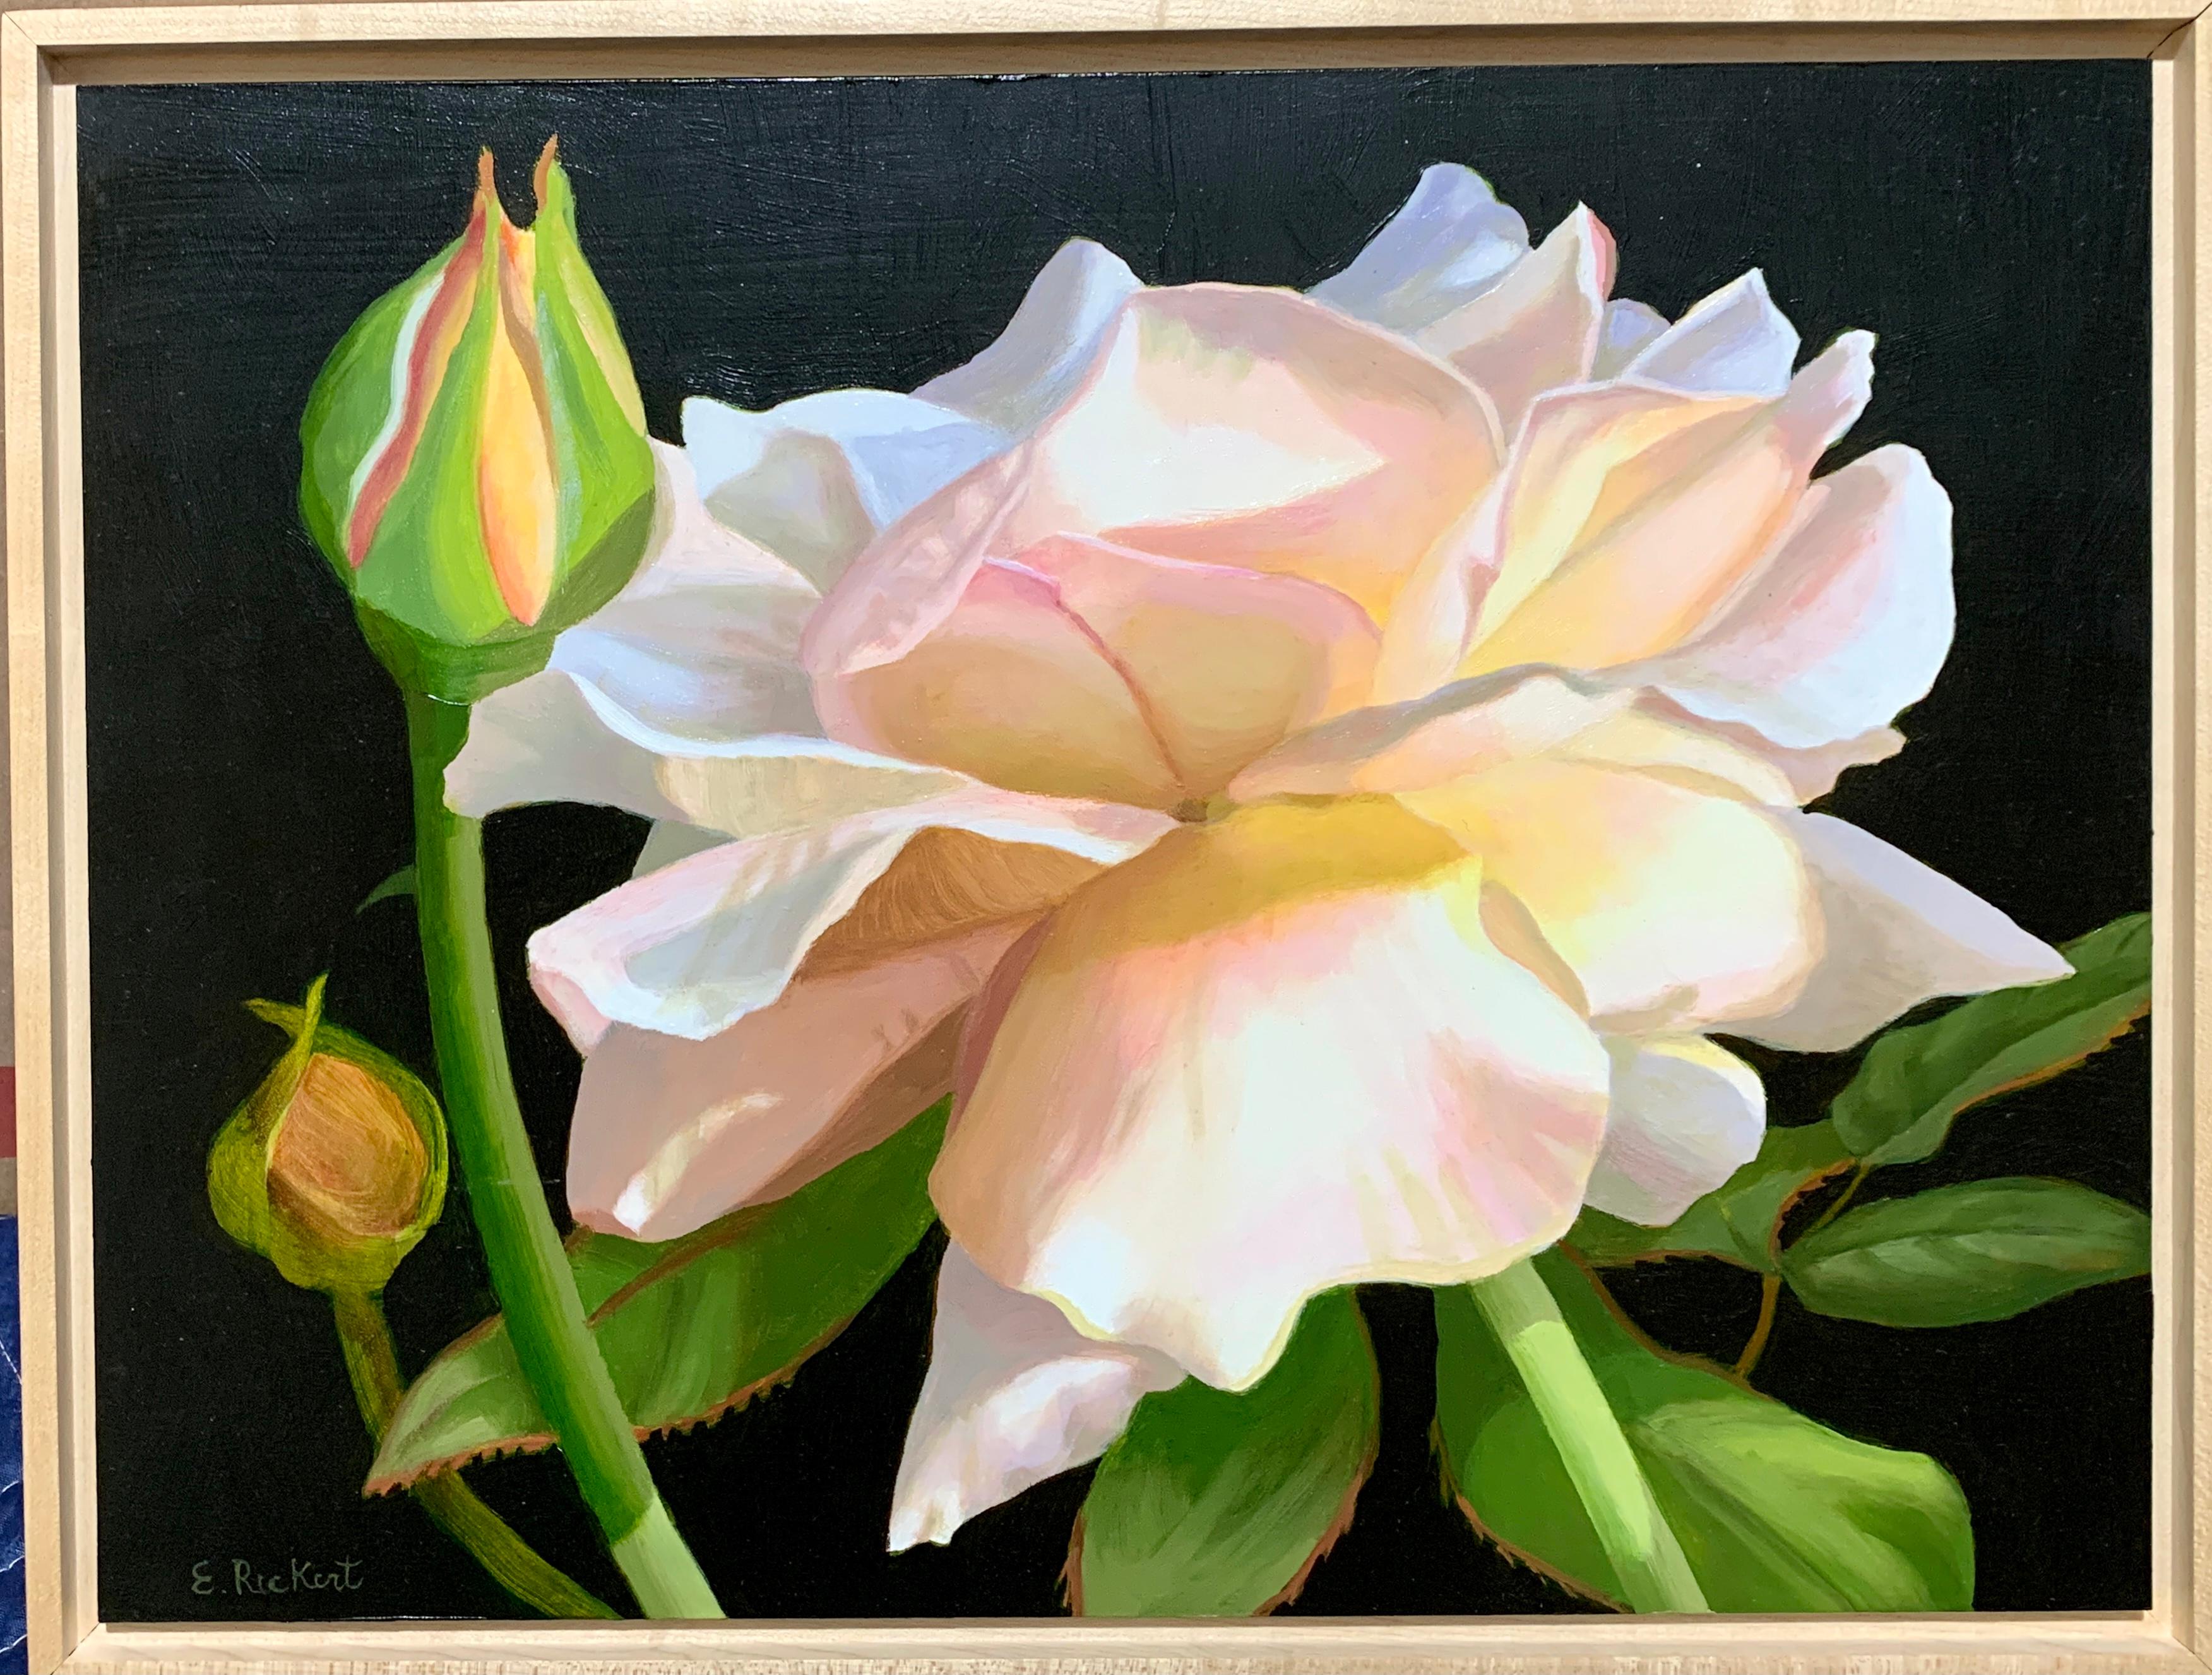 Elizabeth Rickert Figurative Painting – Amerikanisches Realismus-Stillleben mit rosa und gelben Rosen